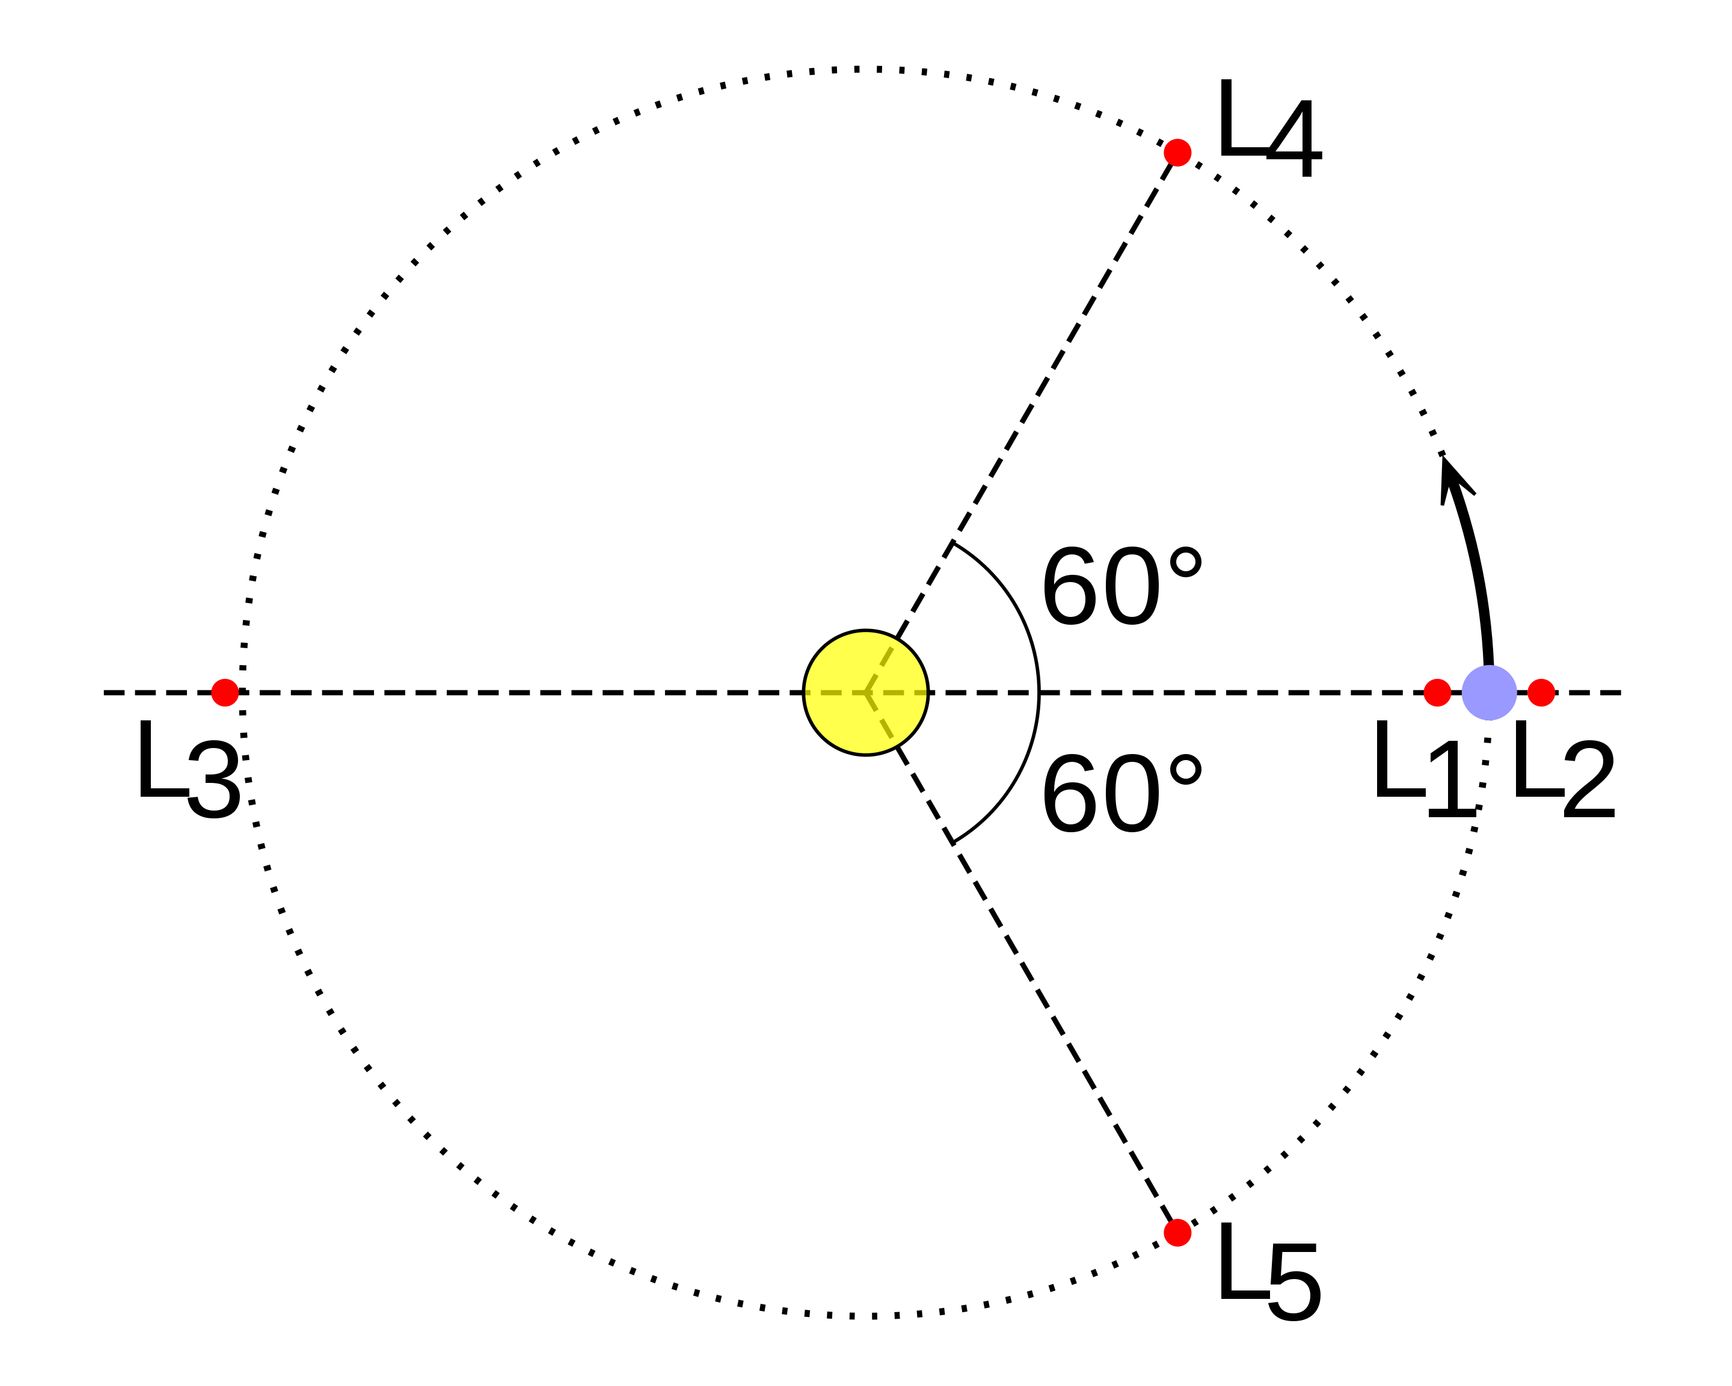 Схема пяти лагранжевых точек в системе двух тел, когда одно тело намного массивнее другого (Солнце и Земля). Здесь точки L4, L5 показаны на самой орбите, хотя фактически они будут находиться внутри неё.